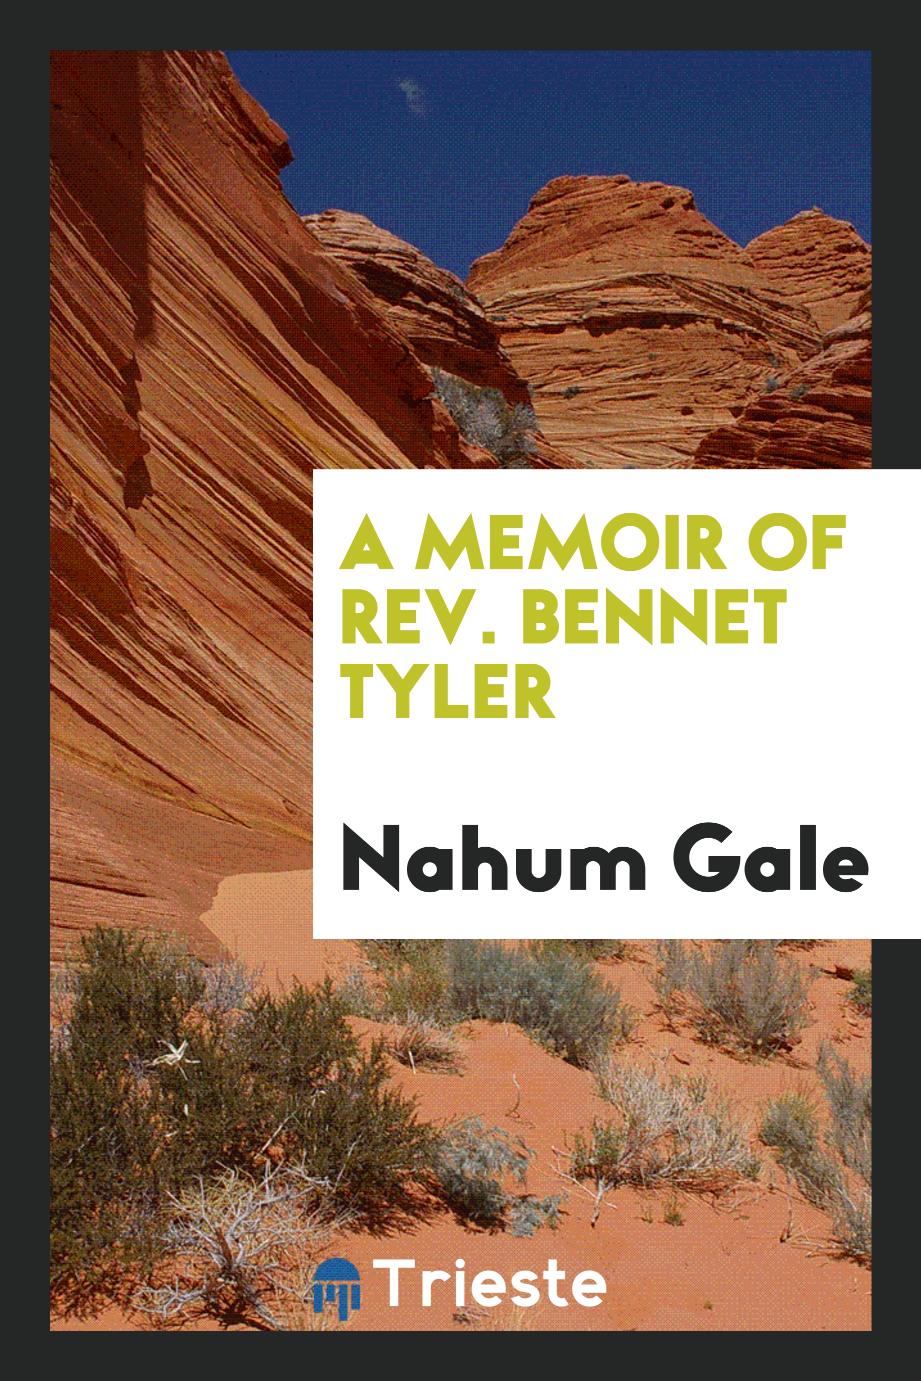 A Memoir of Rev. Bennet Tyler